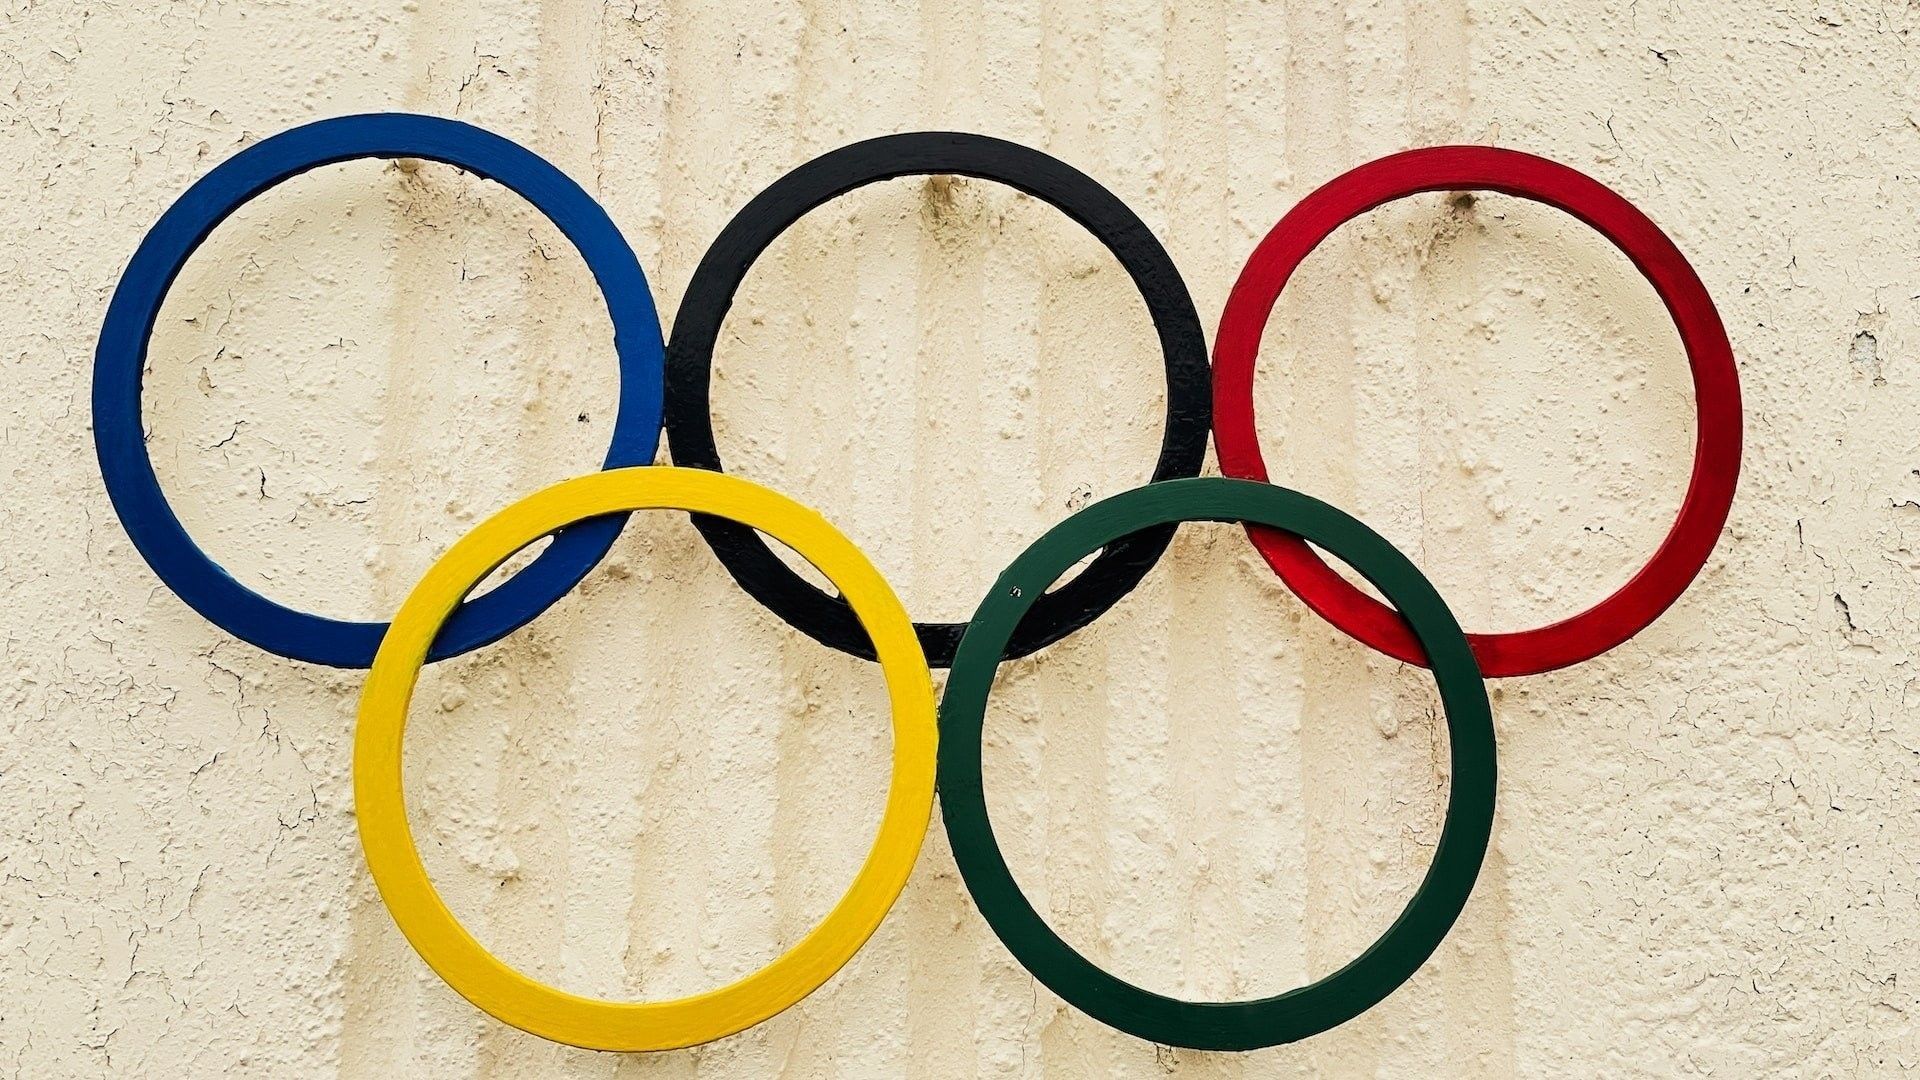 Jeux olympiques sous surveillance.  La France autorisera-t-elle la surveillance de masse ?